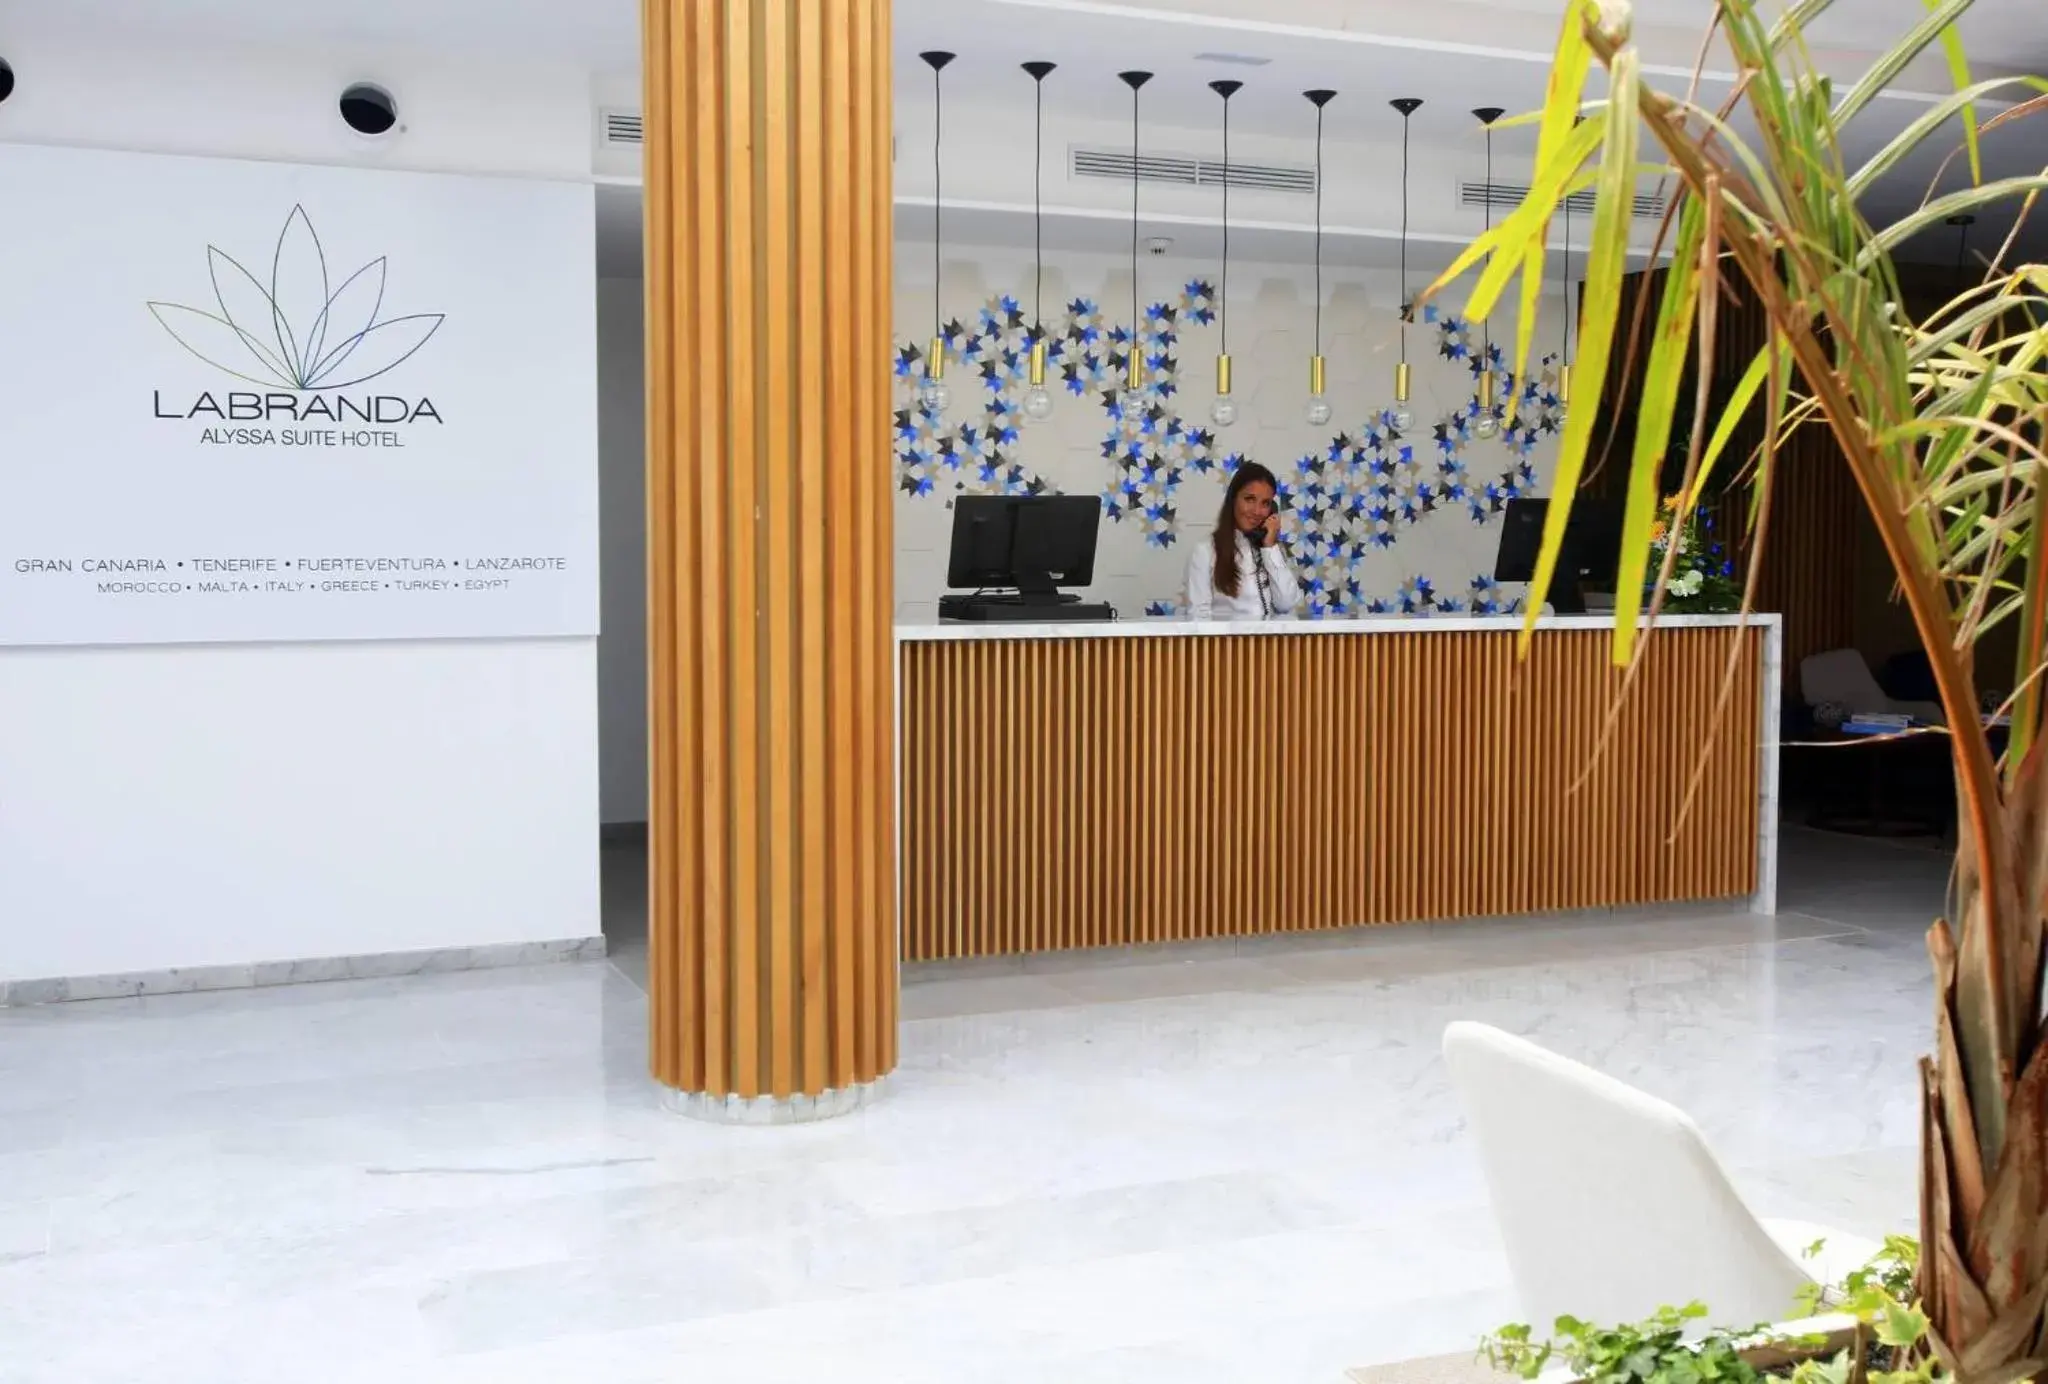 Lobby or reception, Lobby/Reception in Labranda Alyssa Suite Hotel